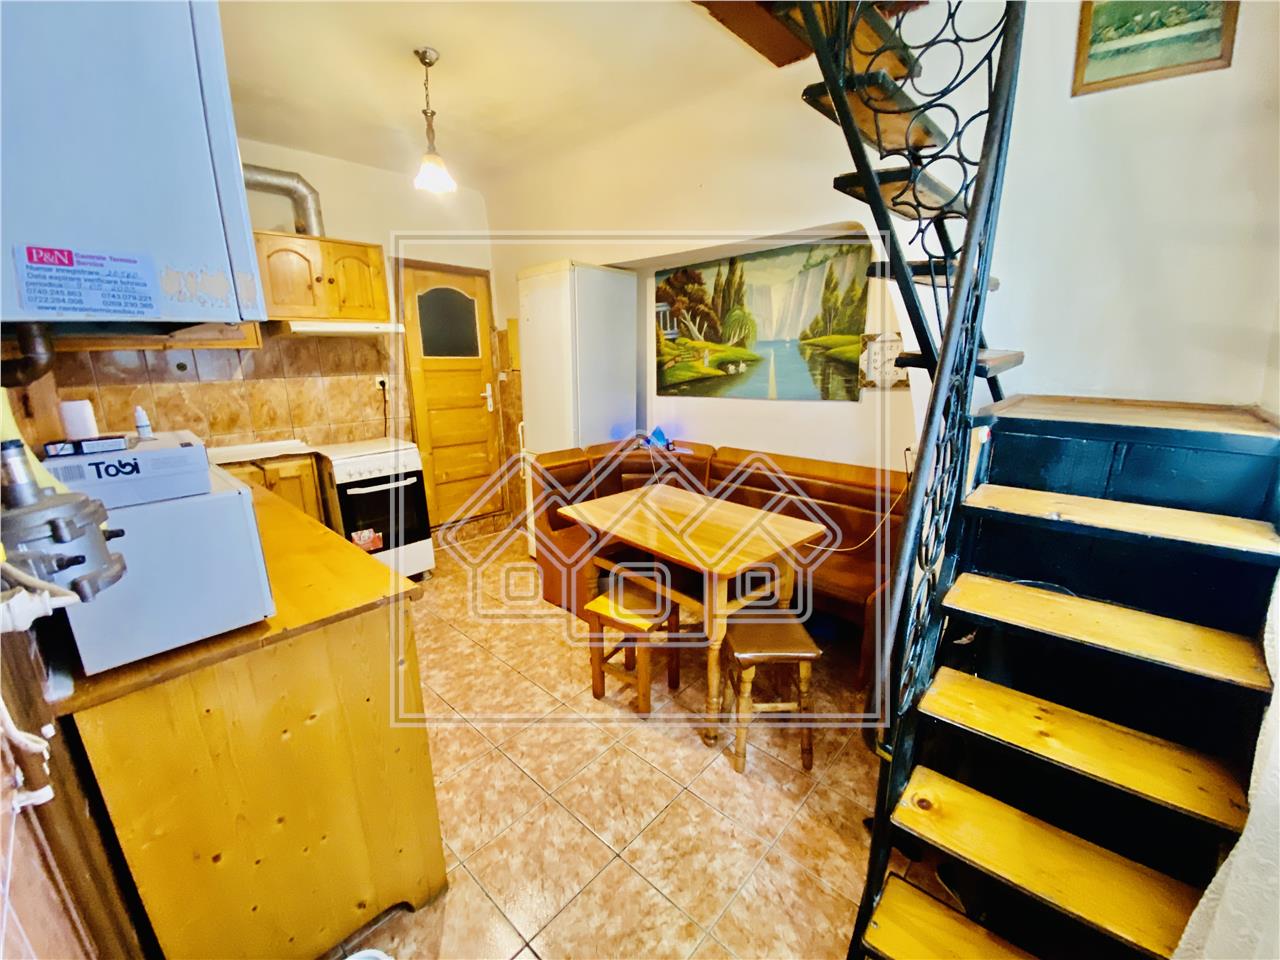 Apartament de vanzare in Sibiu - la casa - 2 camere - Zona Centrala